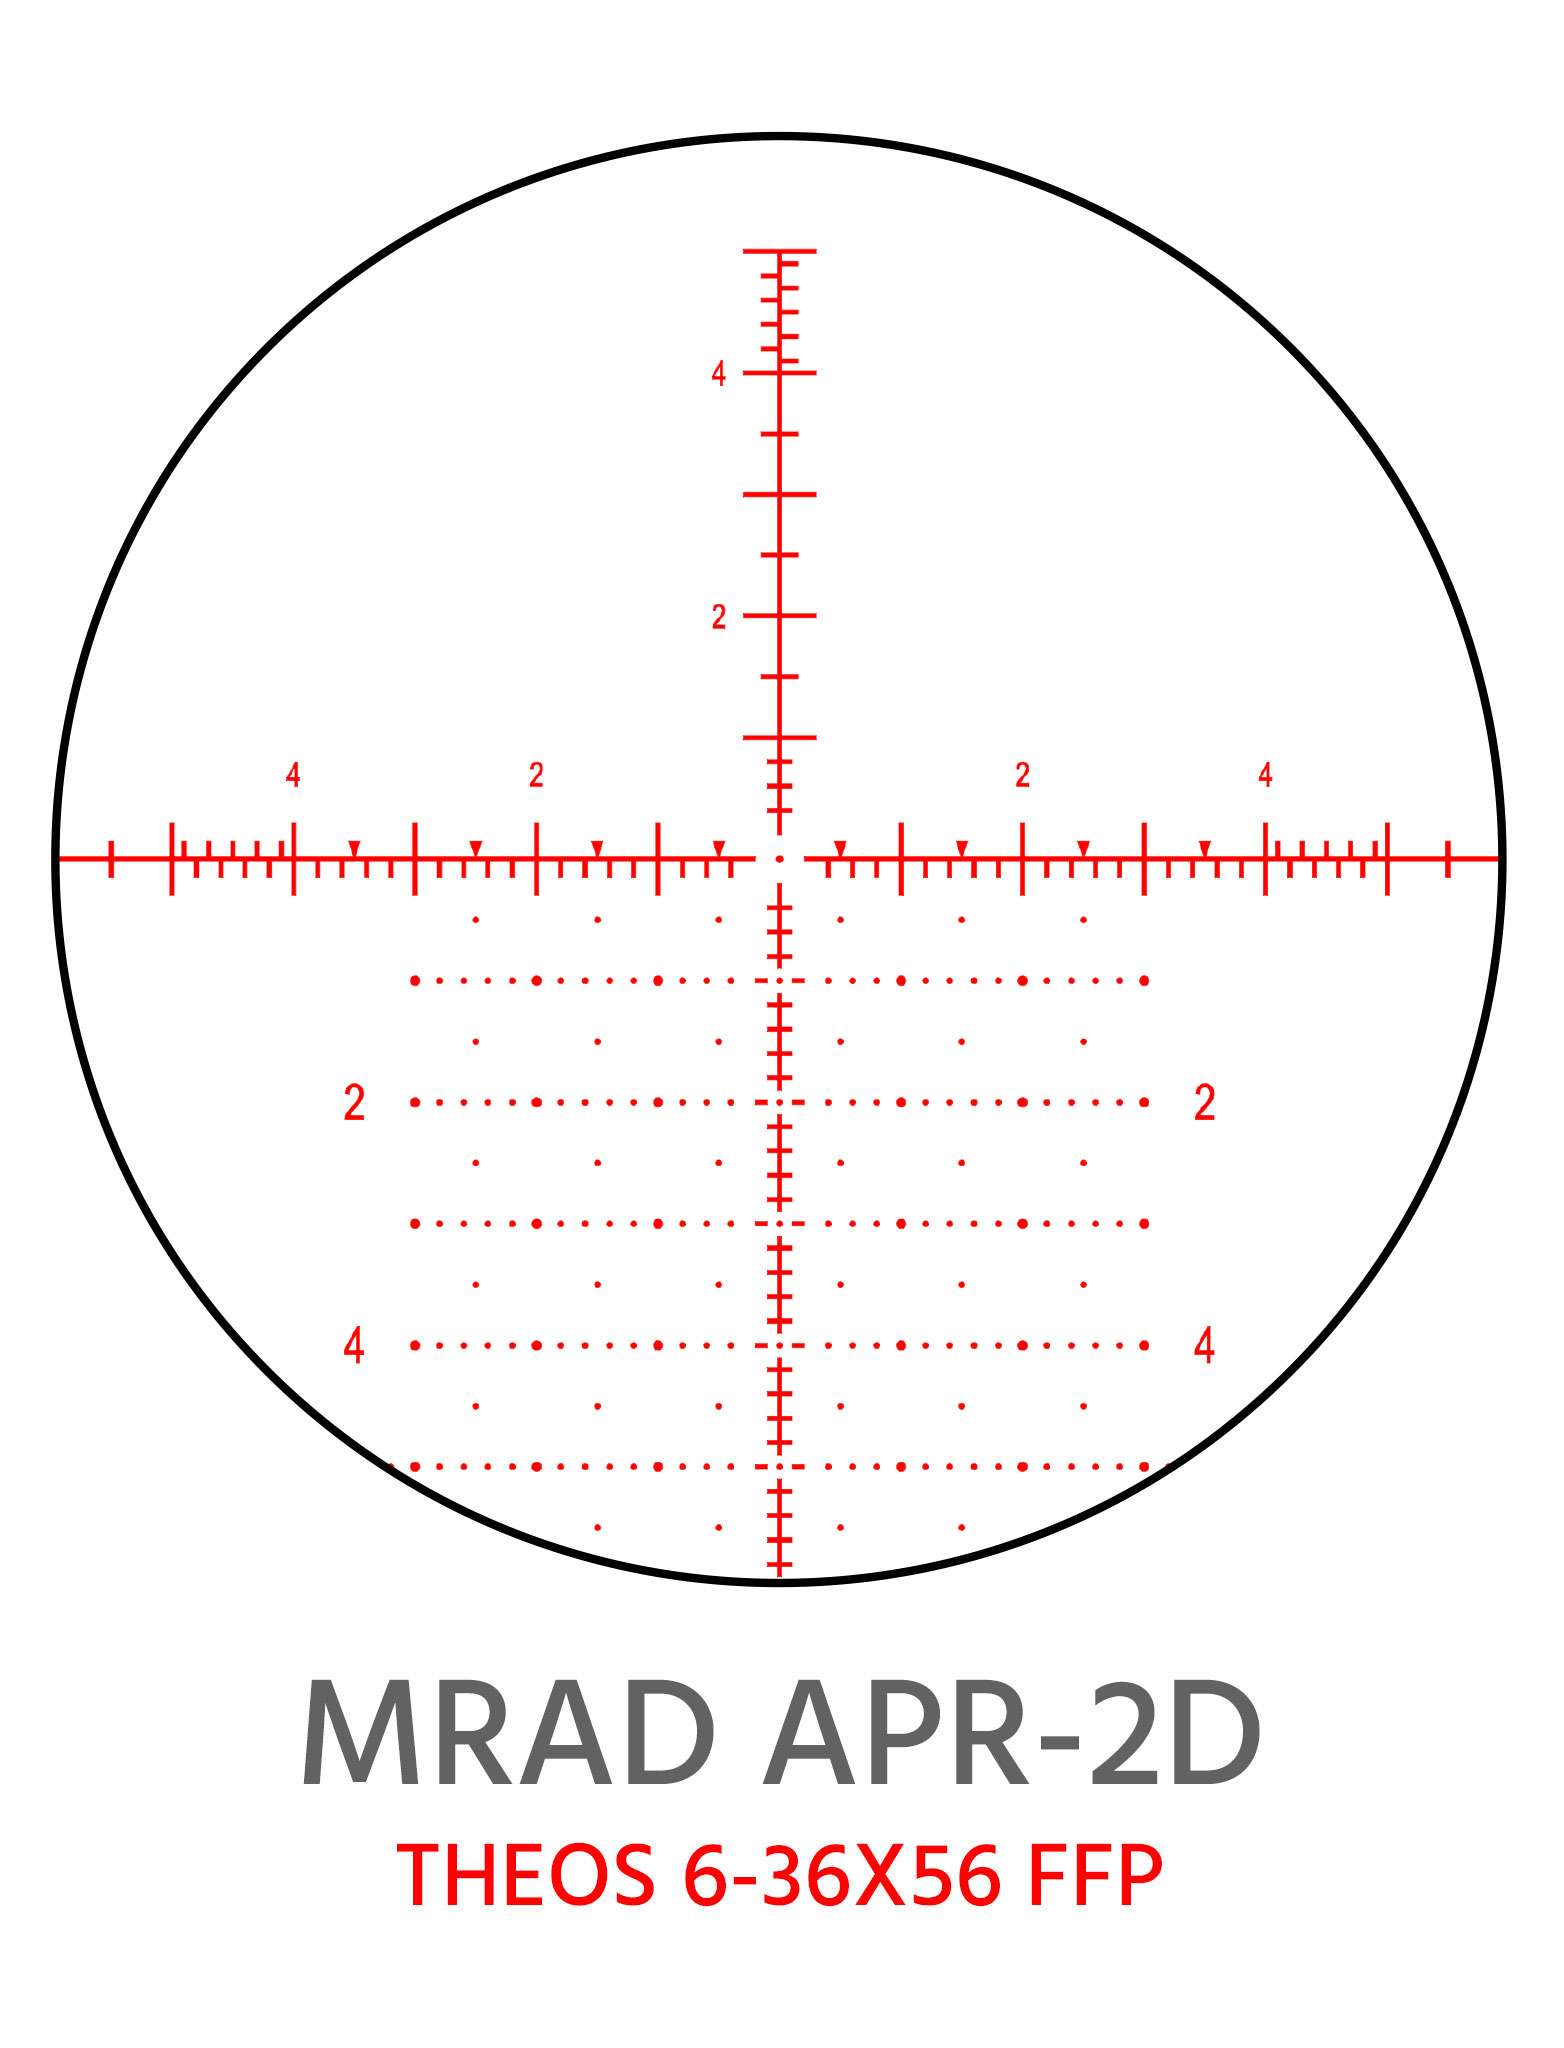 Theos APR-2D MRAD